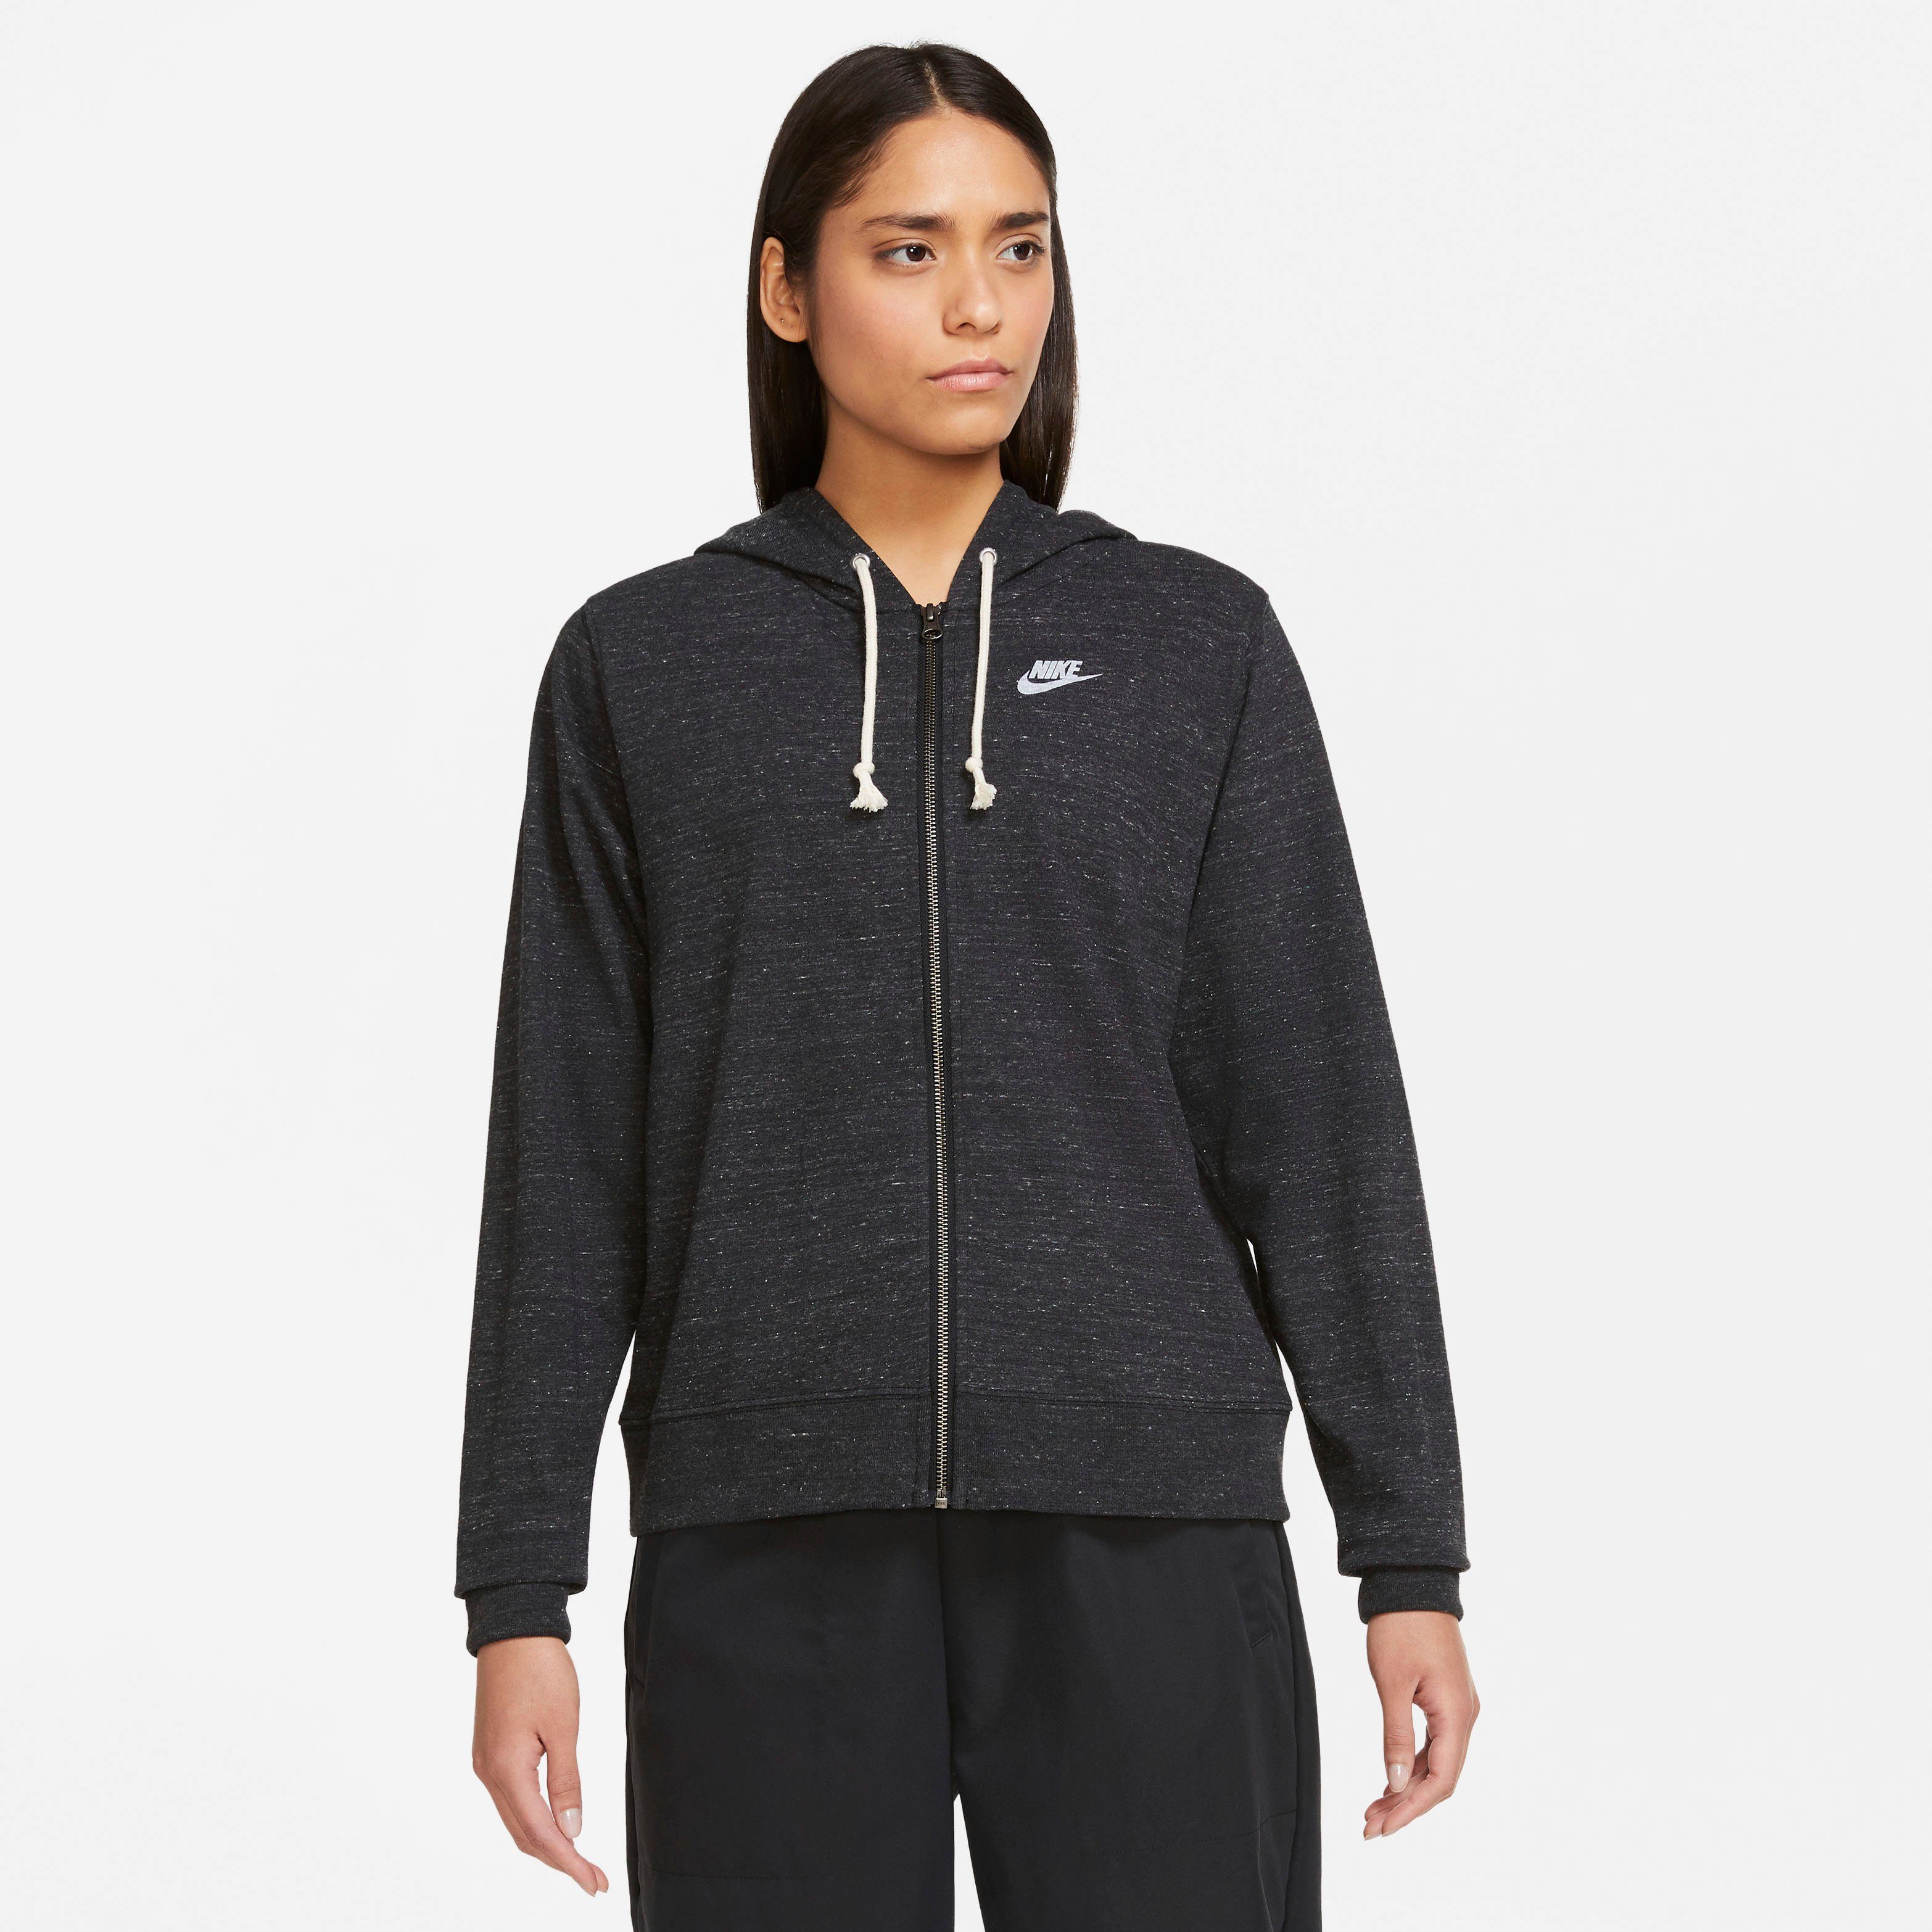 Nike Sweatjacken Damen online kaufen | OTTO